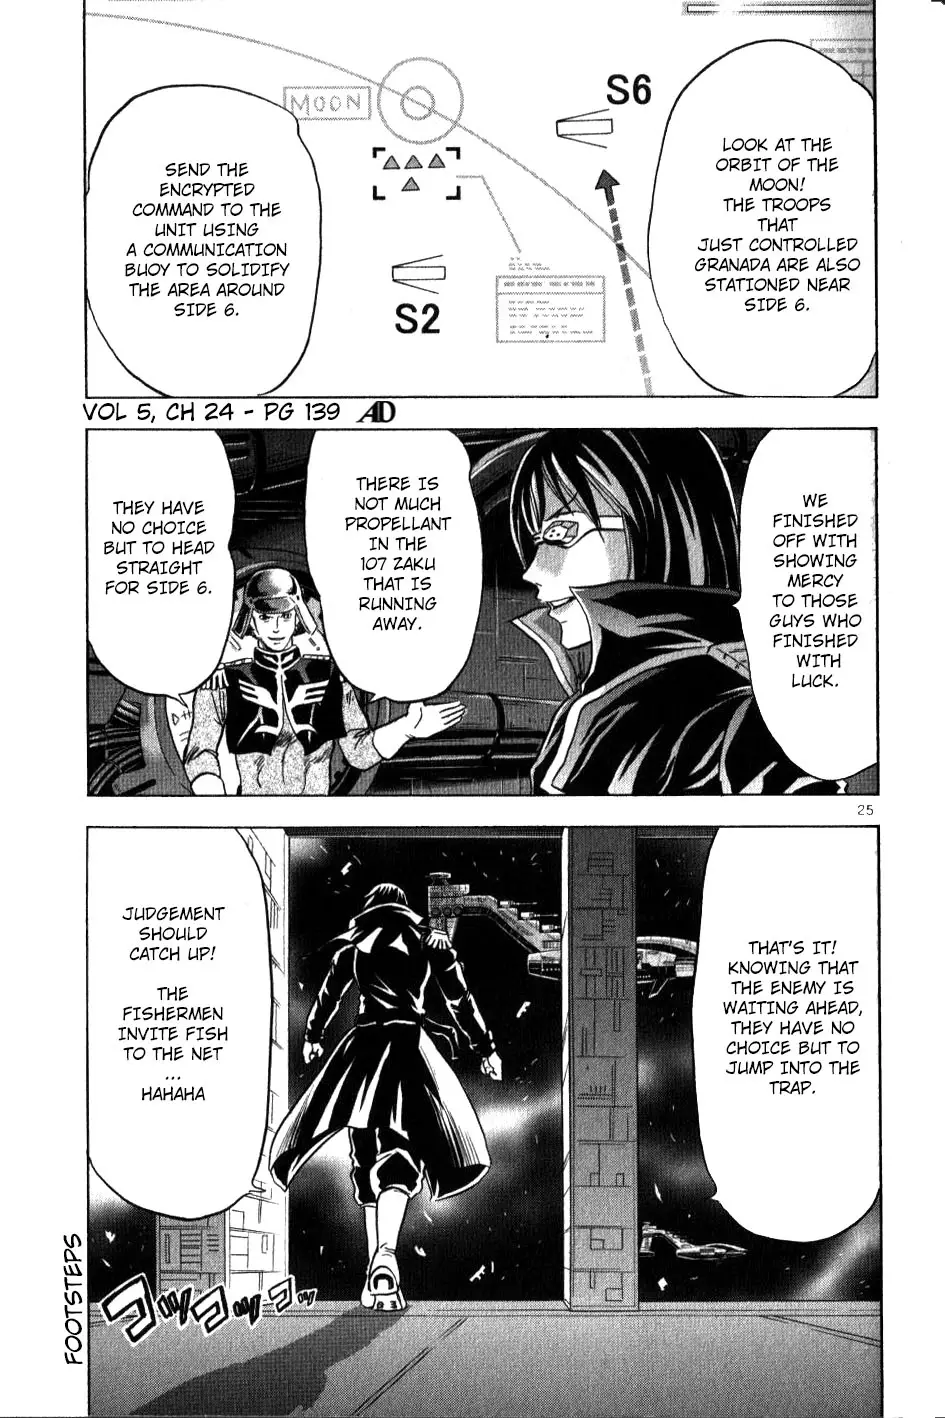 Mobile Suit Gundam Aggressor - 23 page 25-0e2a2e67